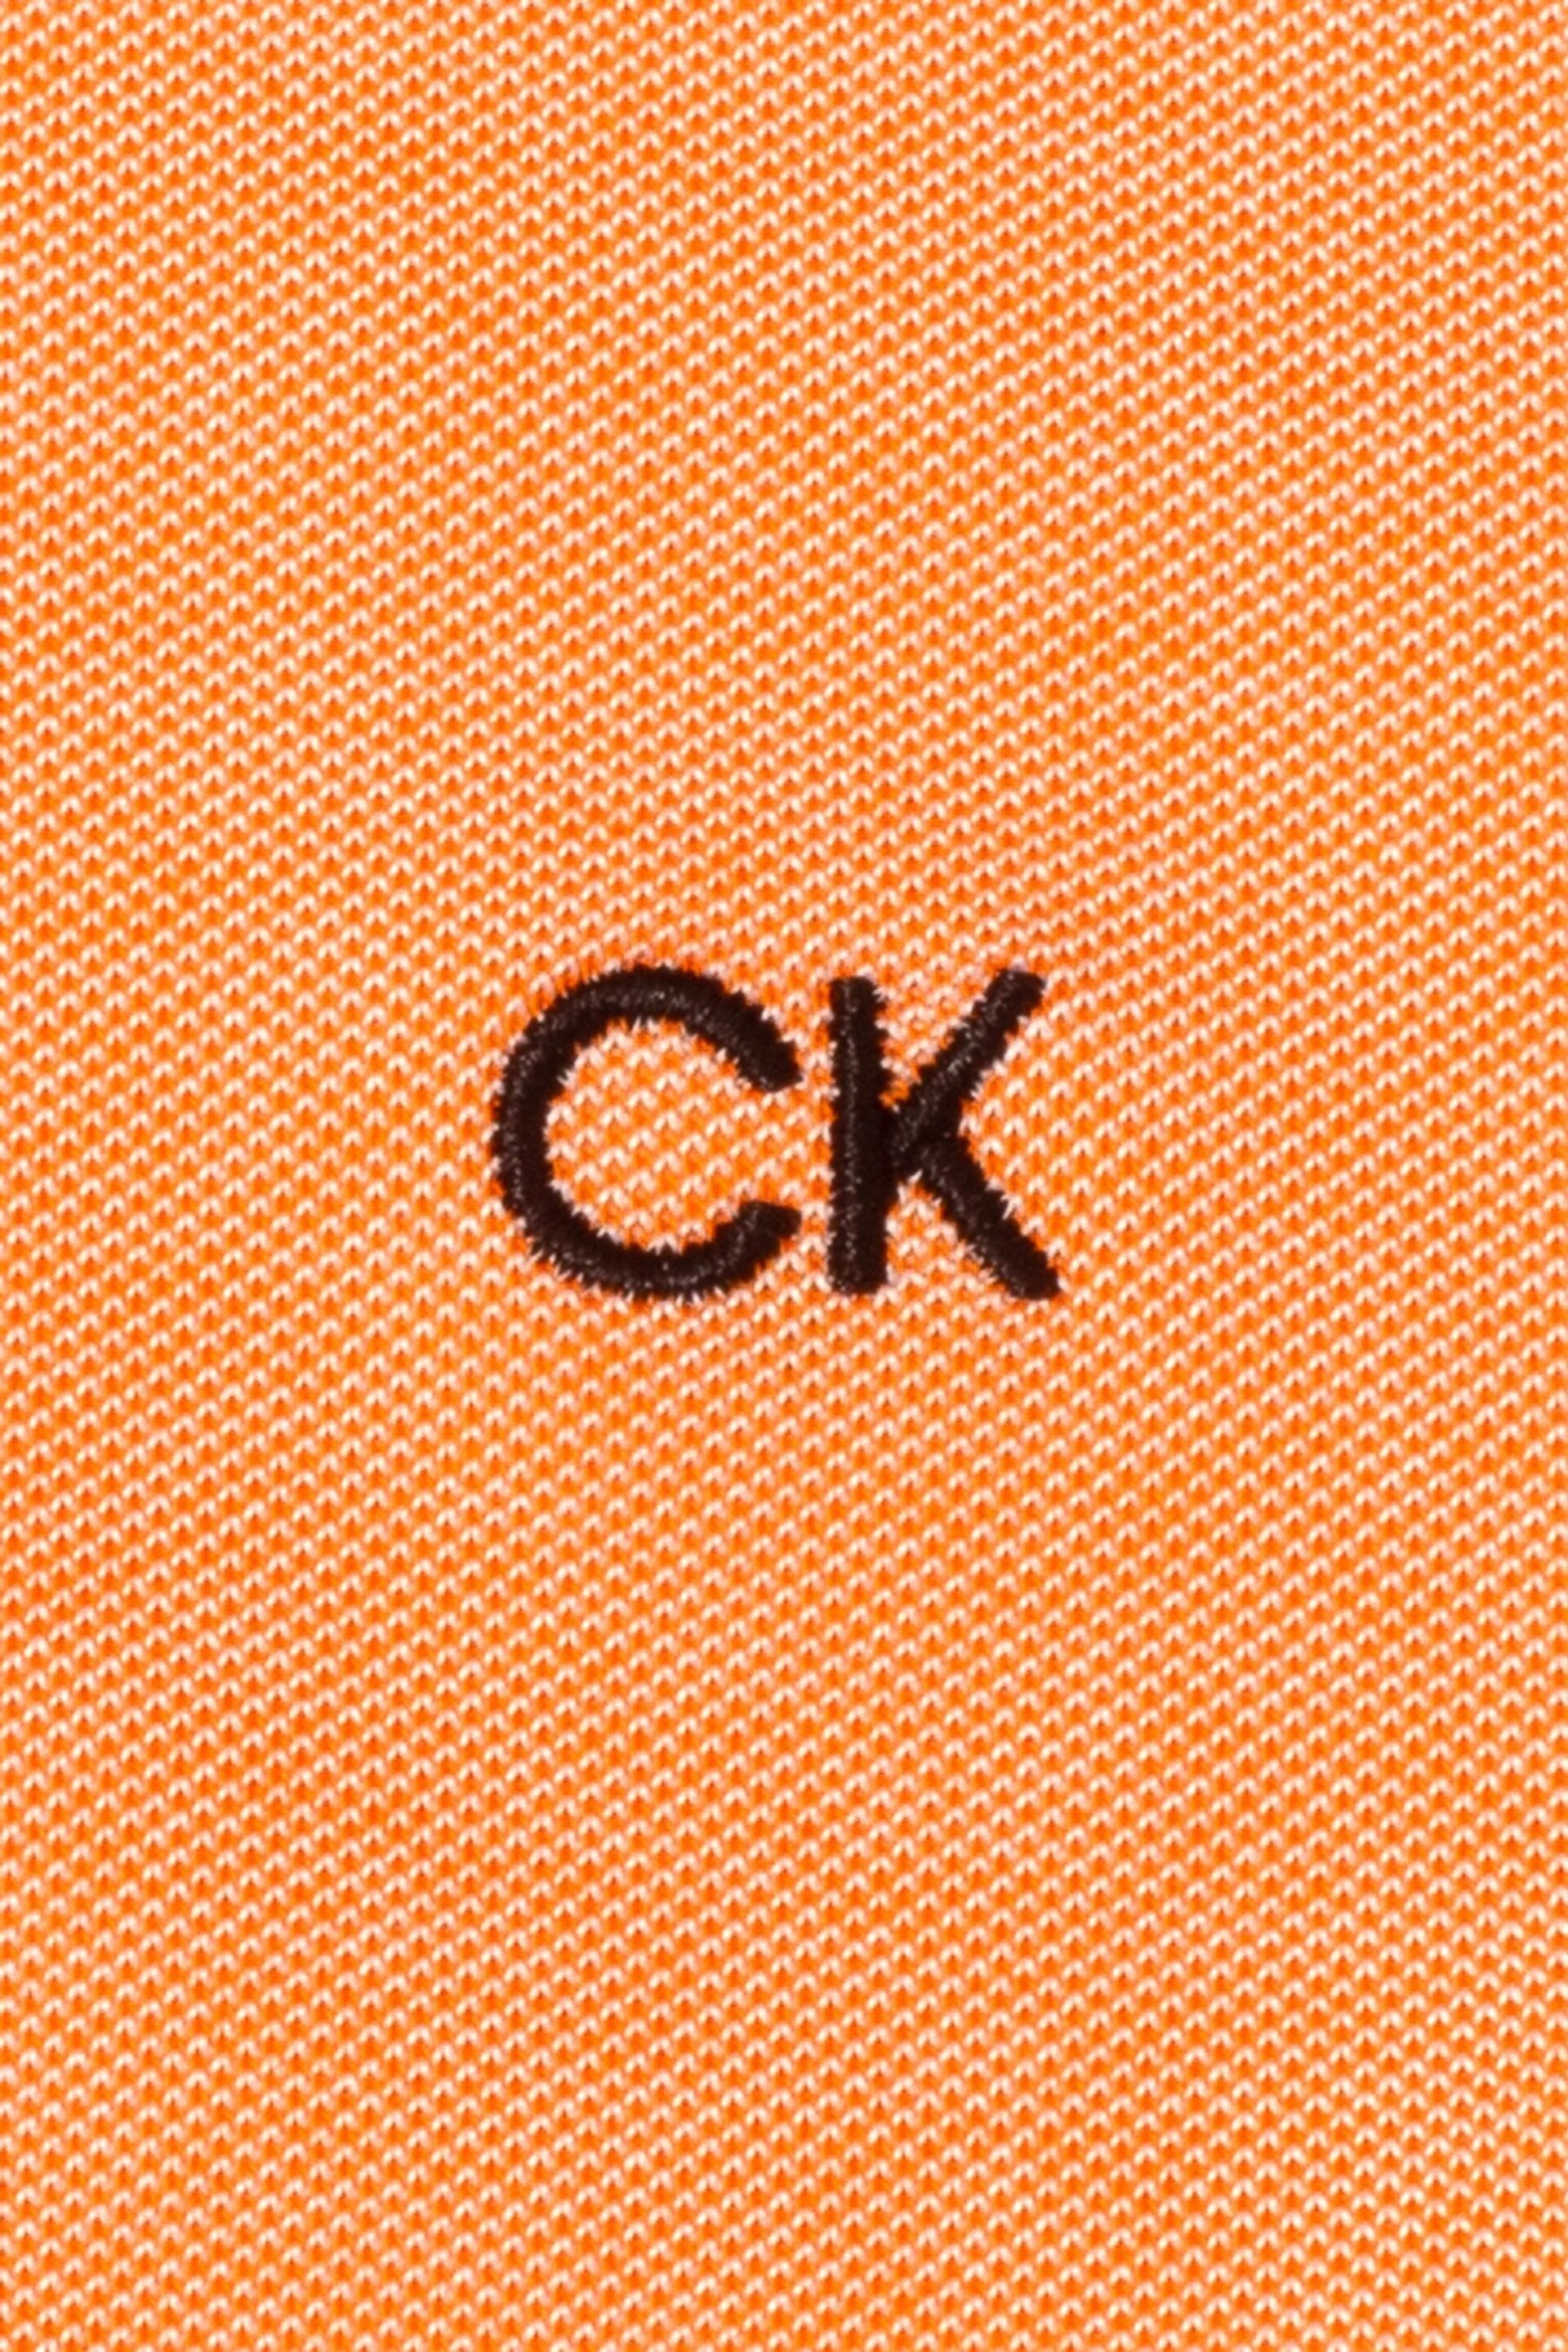 Calvin Klein Orange Golf Uni Polo Shirt - Image 9 of 9